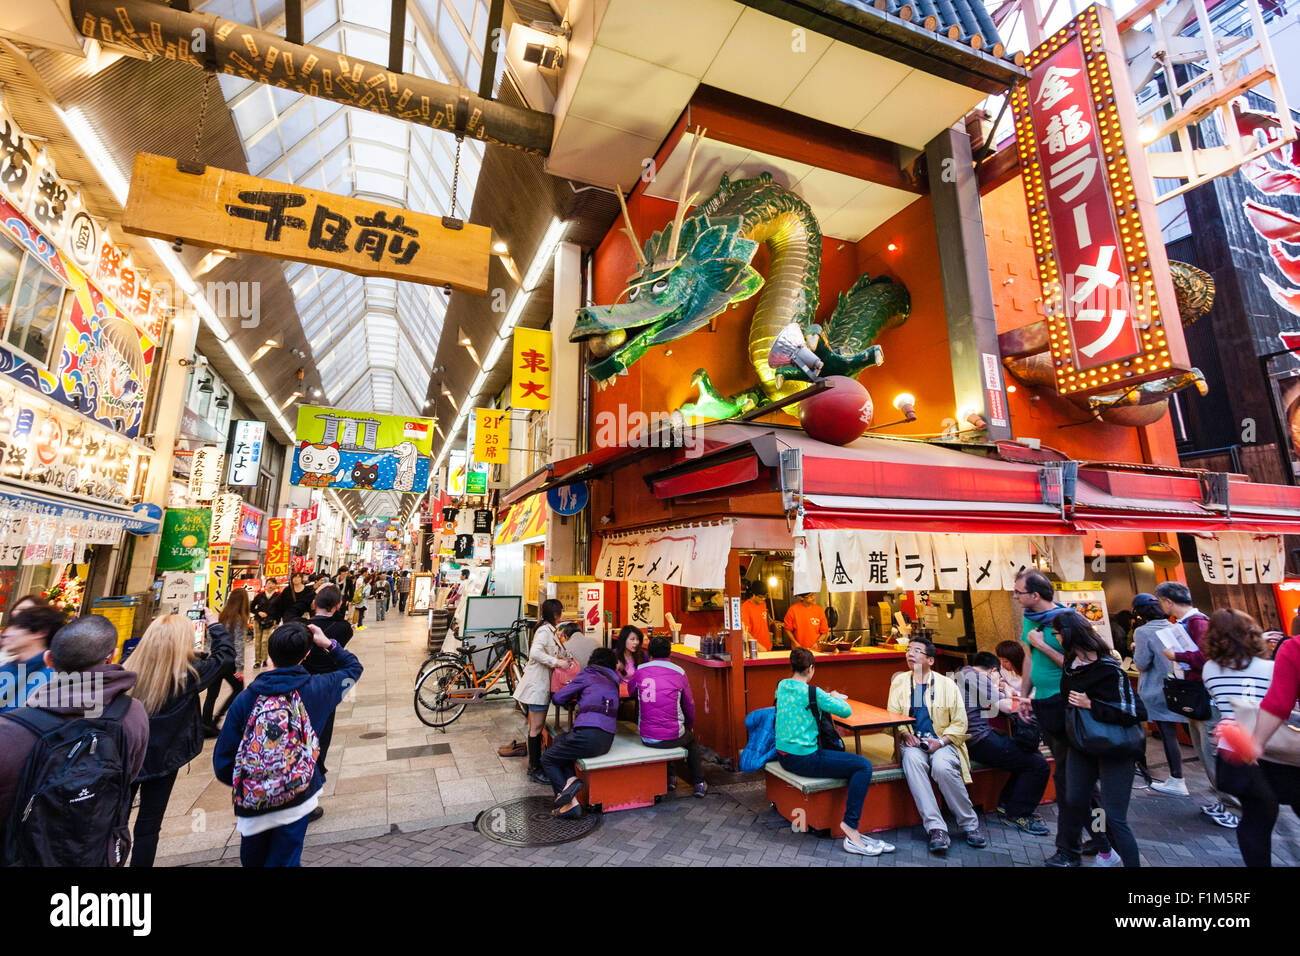 Japon, Osaka. Dotonbori, célèbre Kinryu Ramen noodle restaurant corner Golden dragon signe avec la figure ci-dessus. Les gens assis à l'extérieur manger manger. Occupé. Banque D'Images